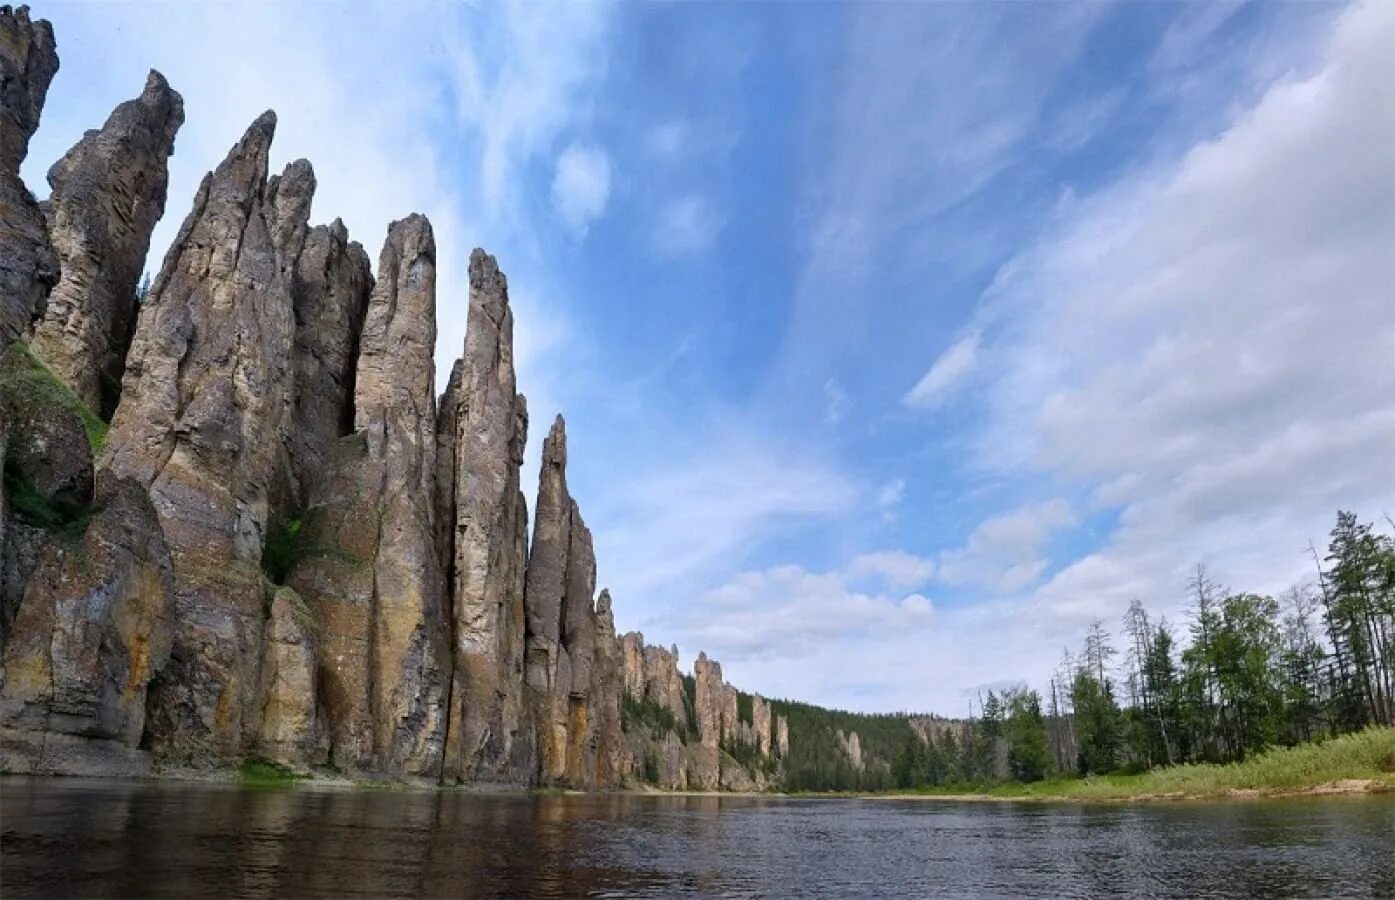 Природный парк Ленские столбы. Риродный парк «Ленские столбы». Река Лена Ленские столбы. Национальный парк «Ленские столбы» в Якутии (Россия).